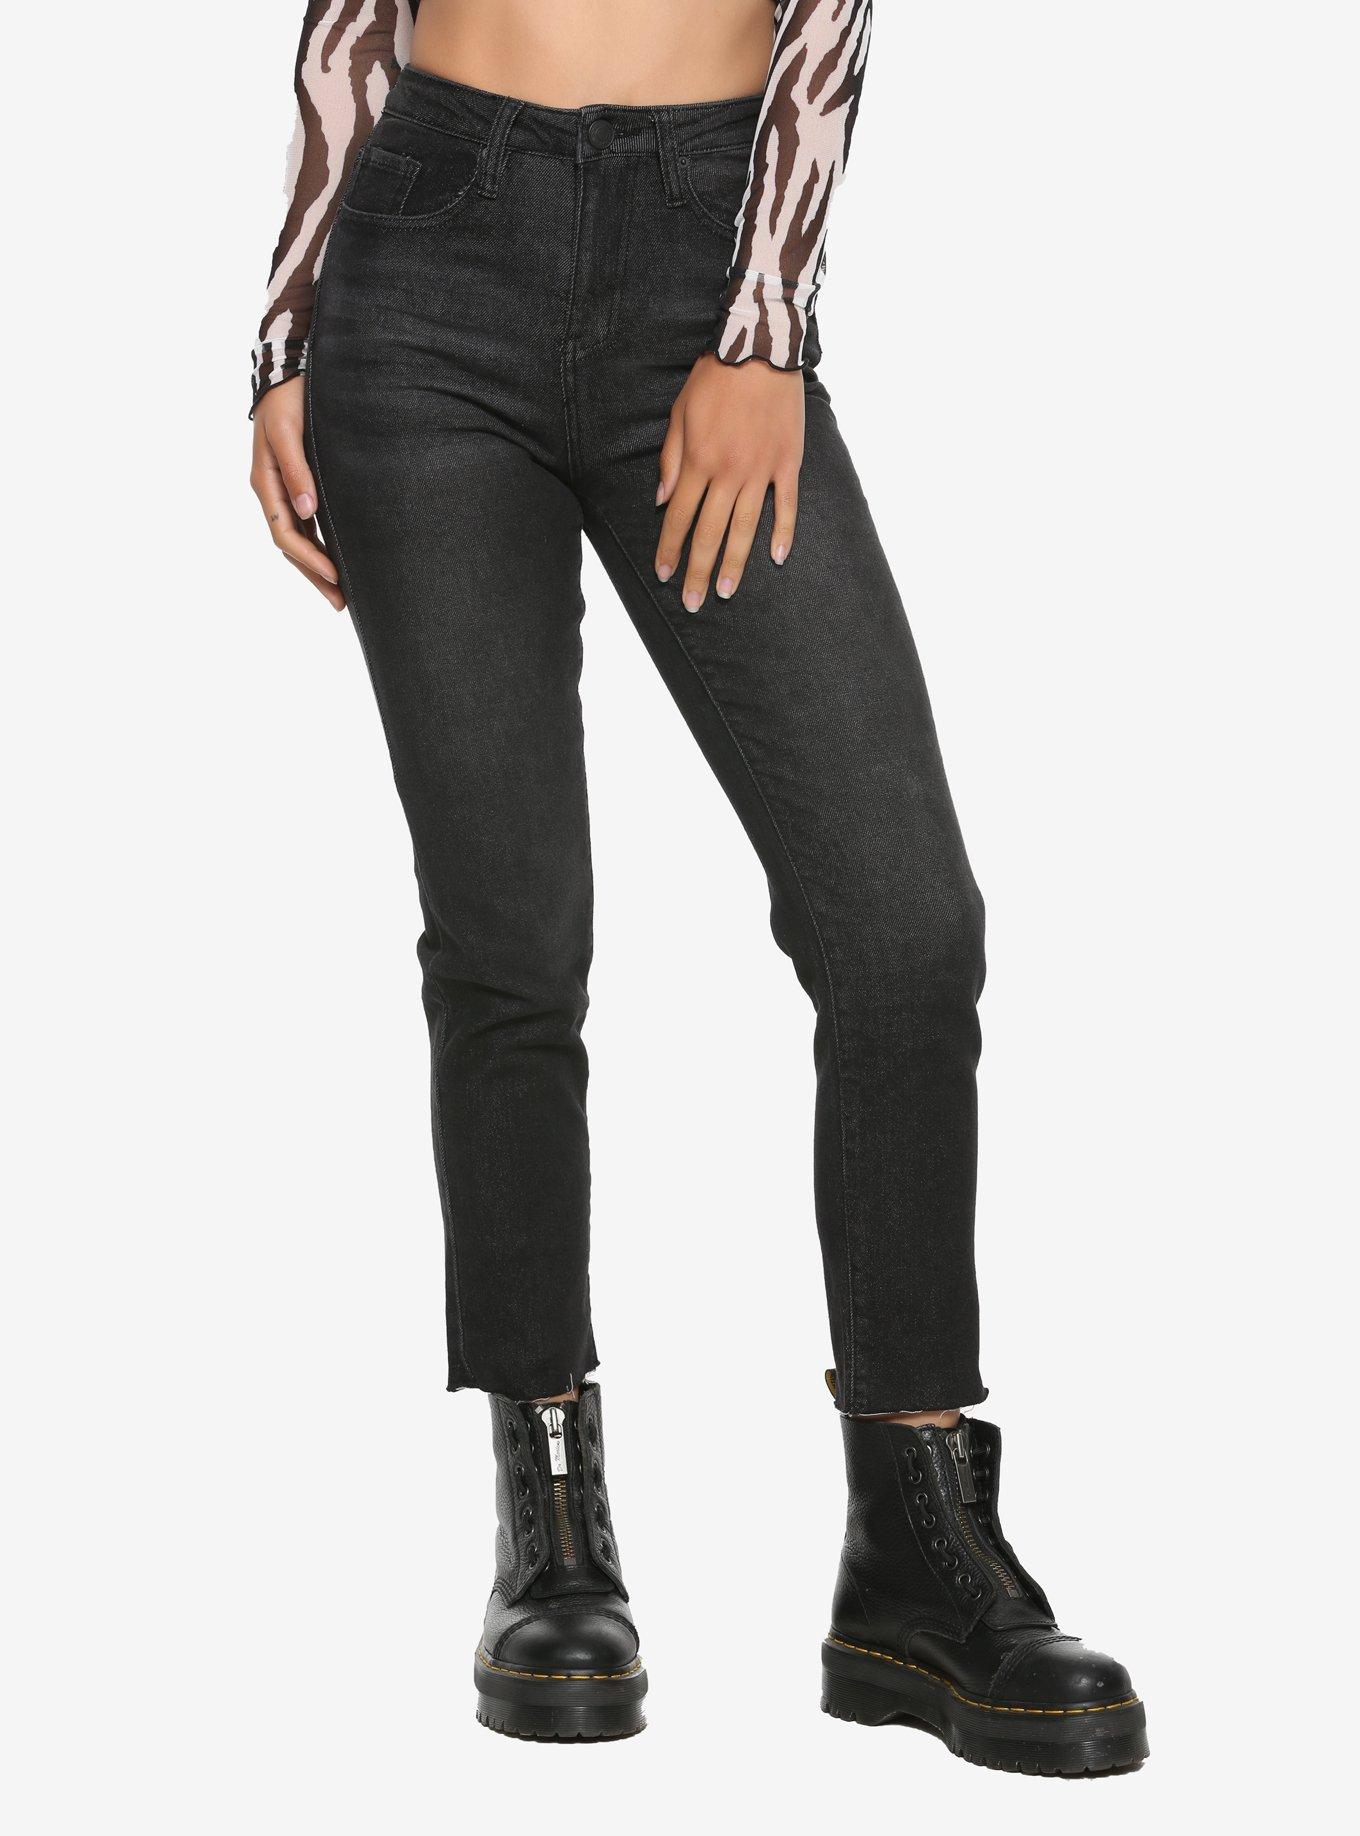 Black Straight Leg Hi-Rise Jeans, BLACK, hi-res